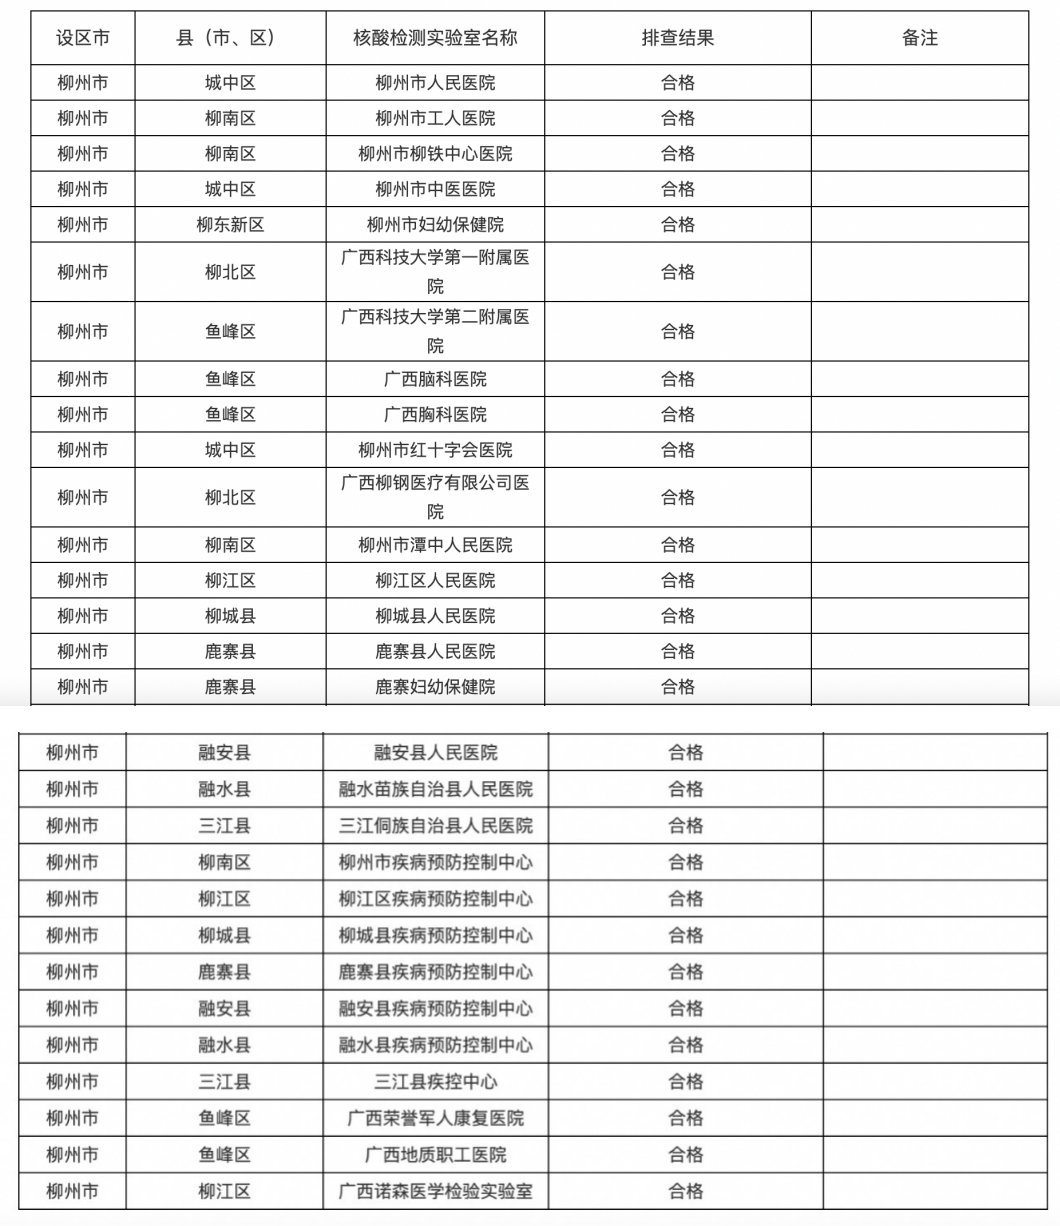 柳州市核酸检测实验室排查结果汇总表（六月），截自柳州市卫健委官网